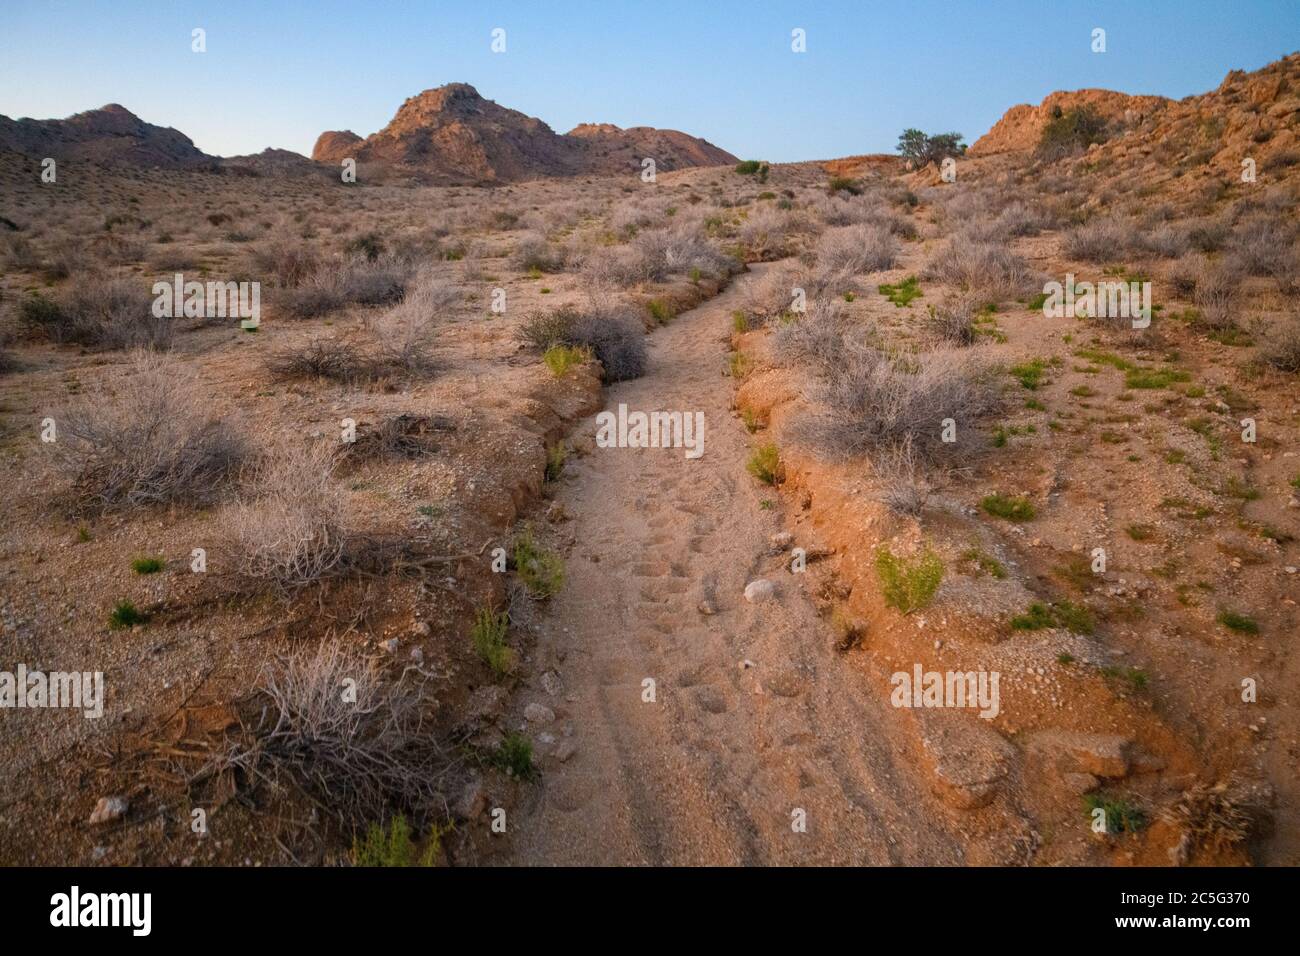 Trail in Aus, karas Region, Namibia Stock Photo